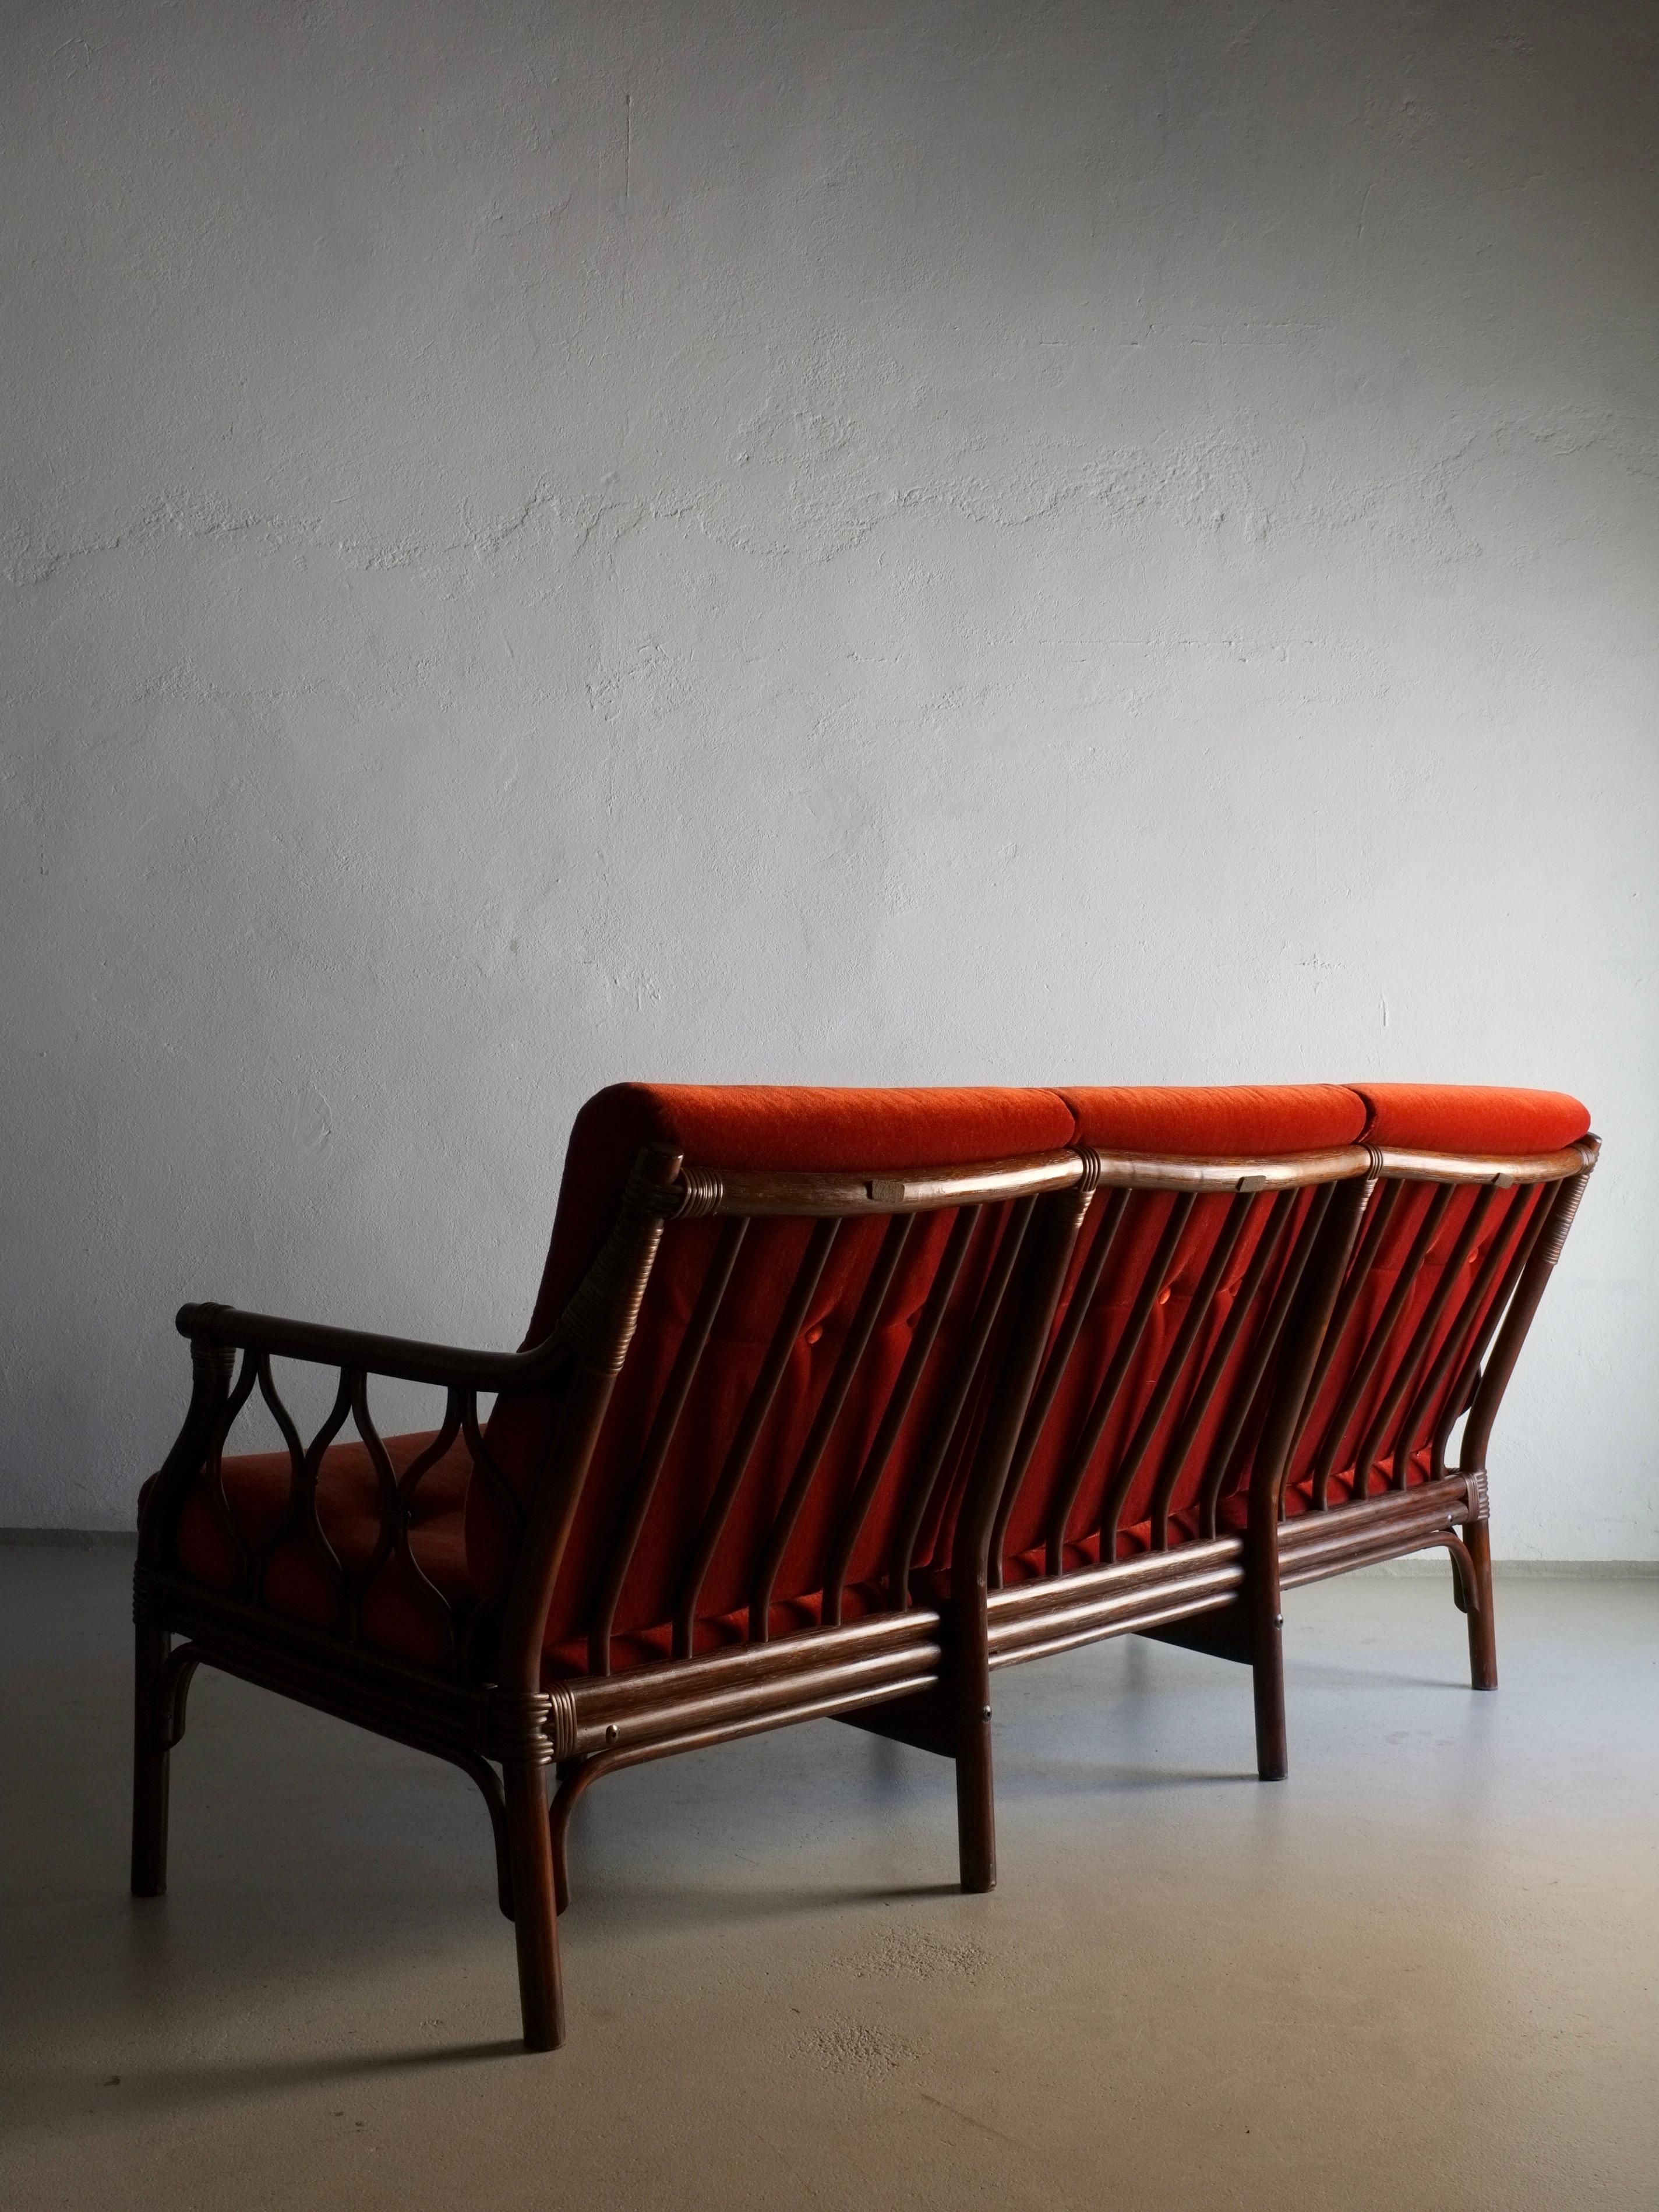 3-Sitzer-Sofa aus dunklem Rattan mit zinnoberrotem Veloursbezug. Ein 2-Sitzer-Sofa, ein Sessel und ein Couchtisch aus diesem Set stehen zur Verfügung.

H(gesamt/Gestell) 84/77 cm, H(Sitz) 44 cm, B 180 cm, T 75 cm

